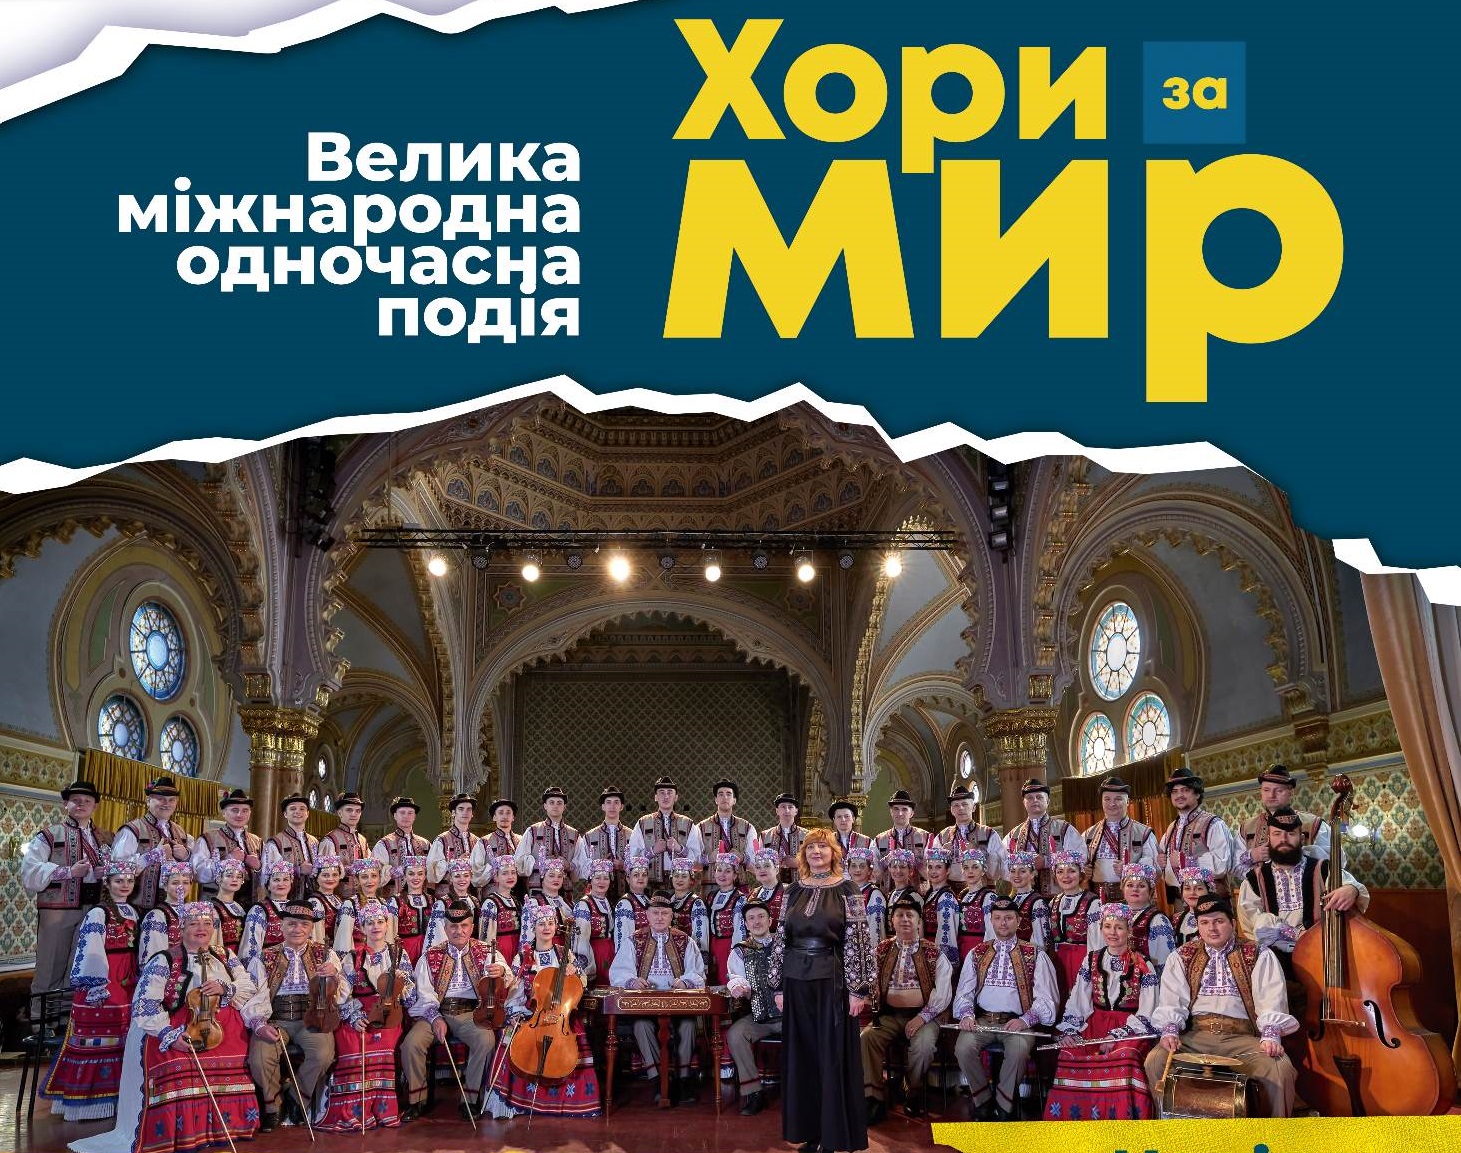 Закарпатський народний хор об’єднав десятки колективів задля участі в міжнародному флешмобі